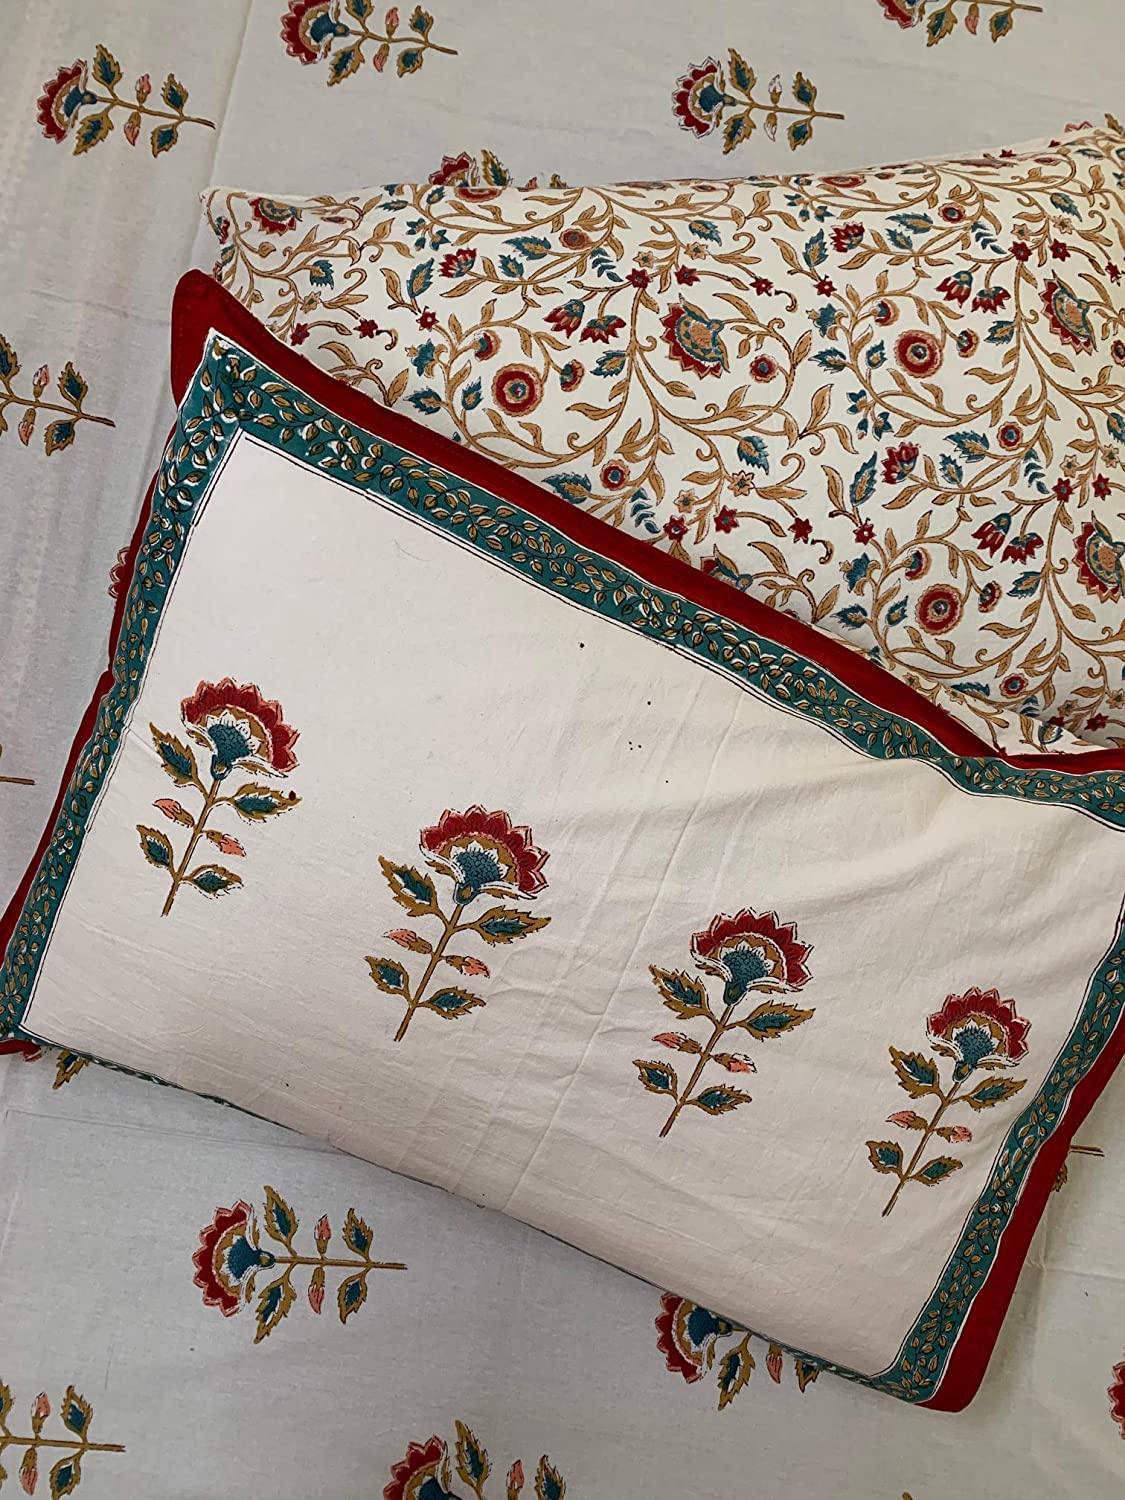 Nargis 100% Cotton Hand Block Print Red & White Bedsheet